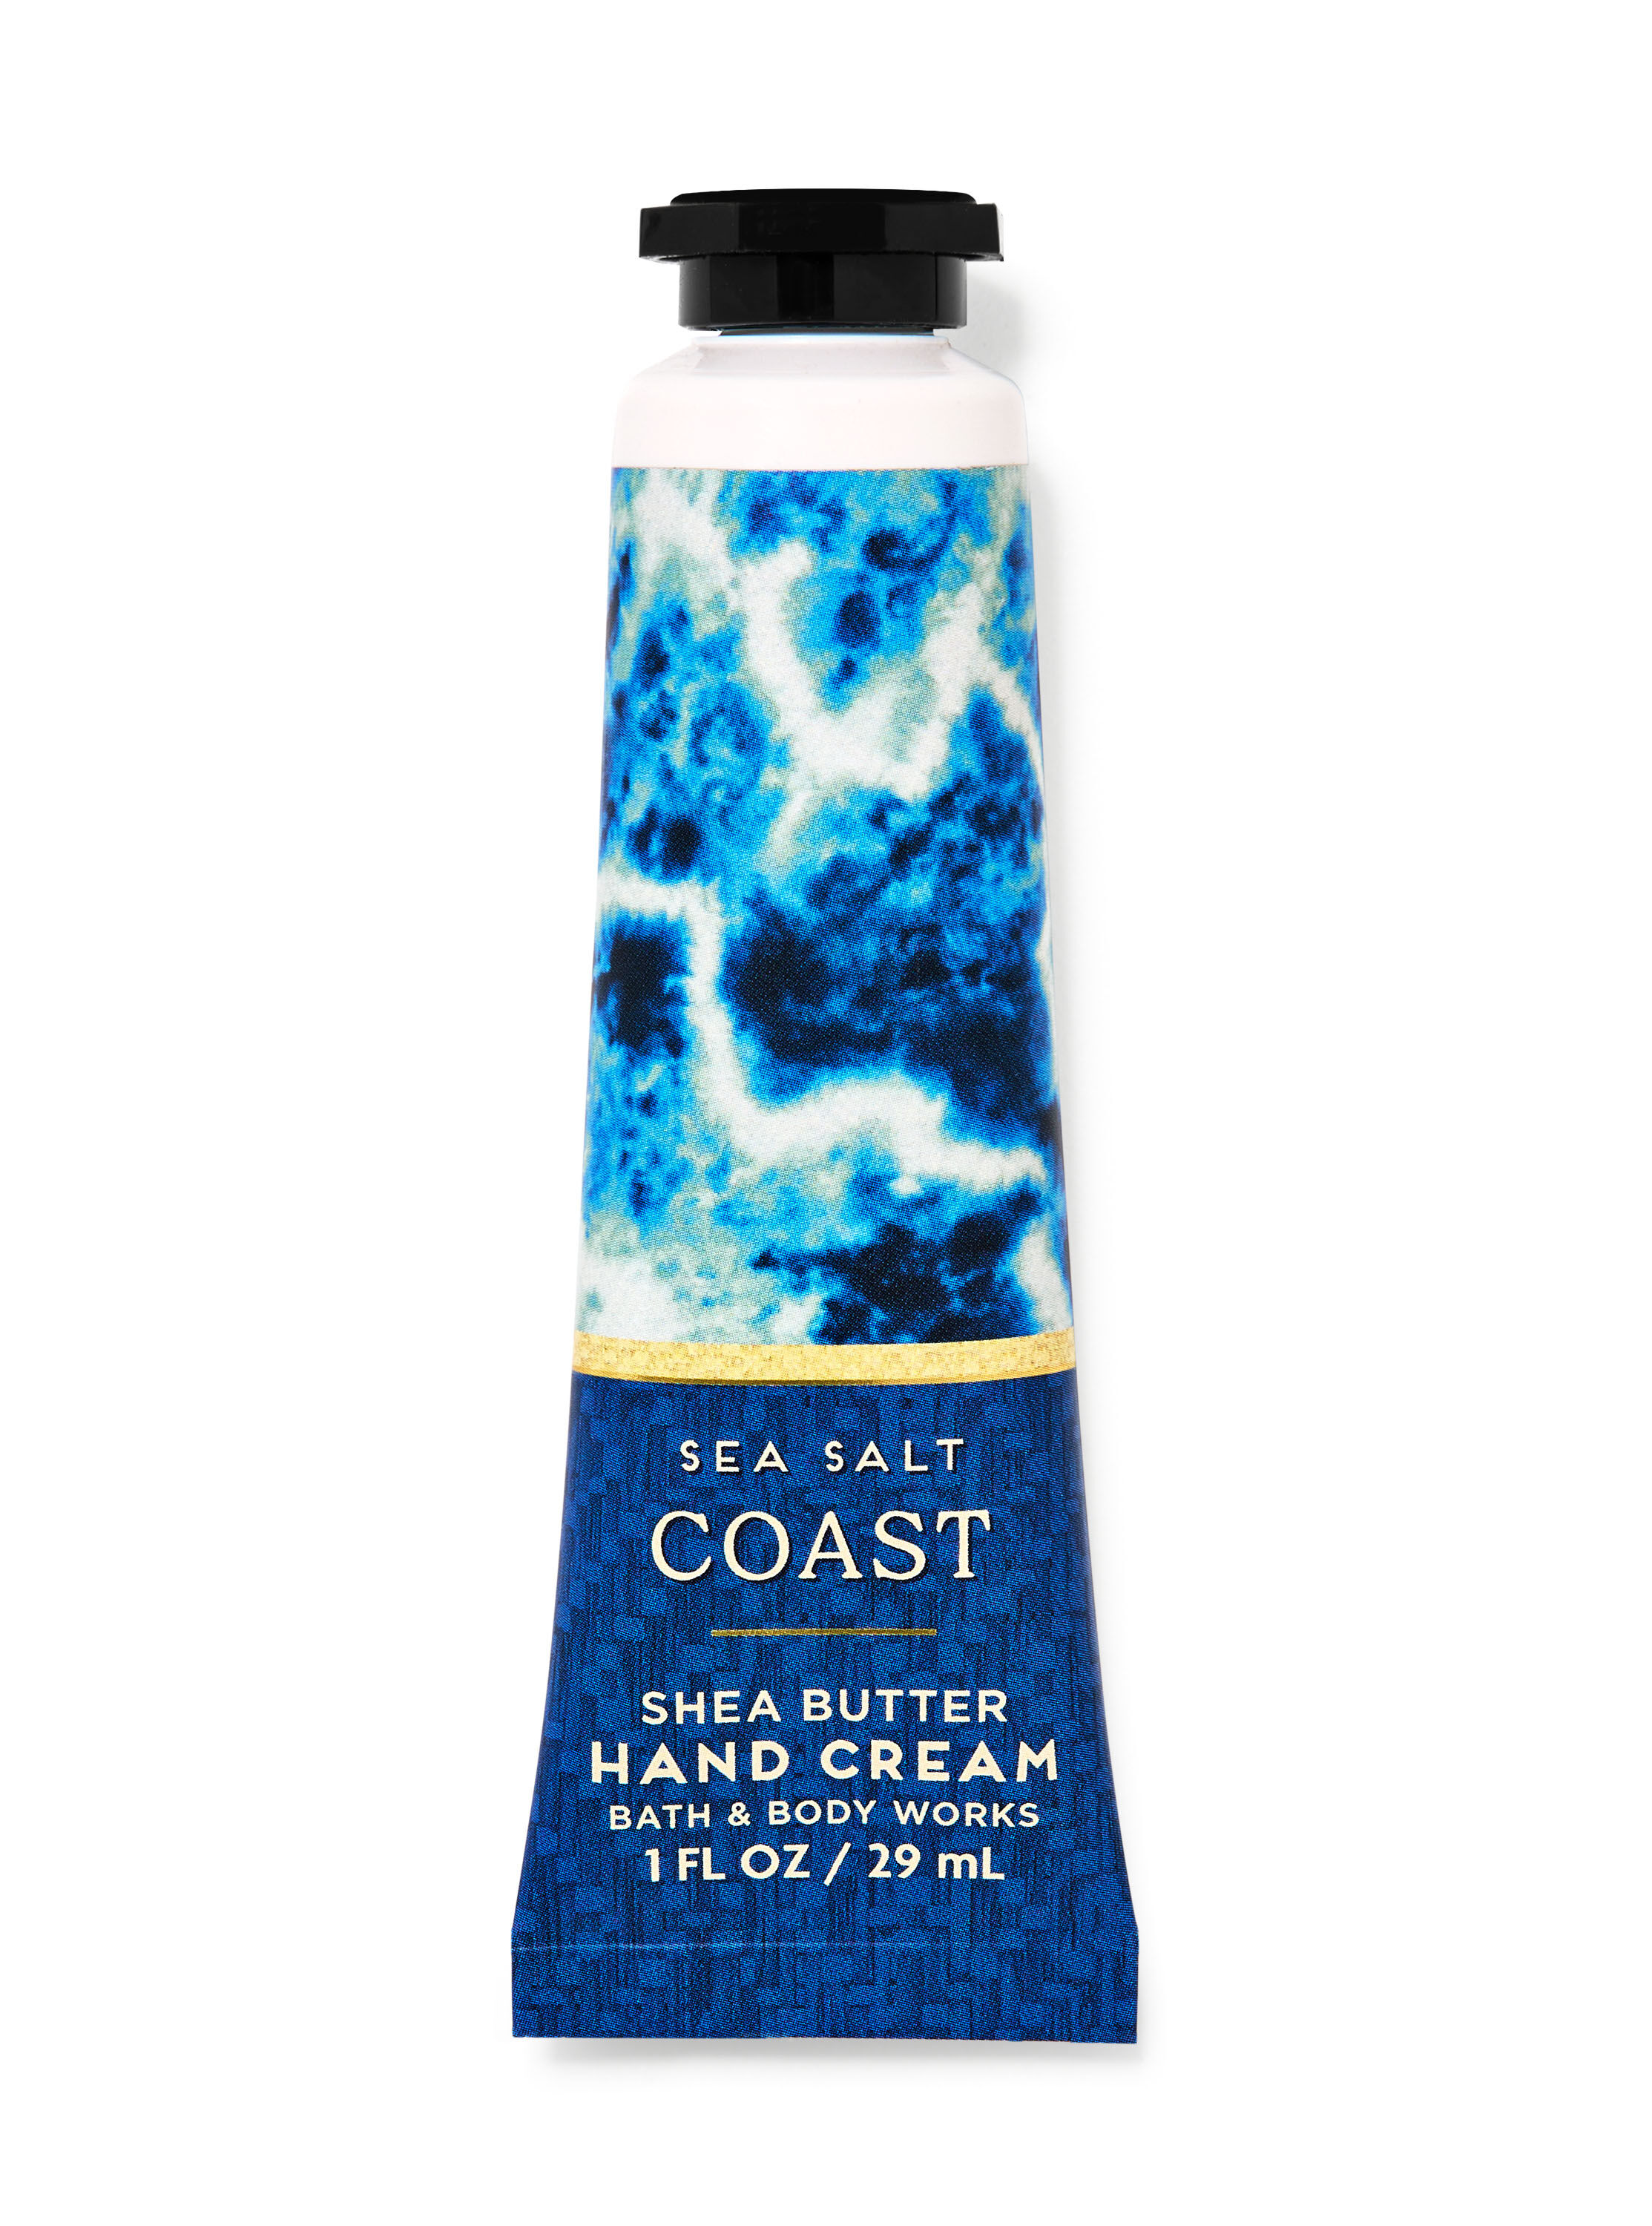 Sea Salt Coast Hand Cream